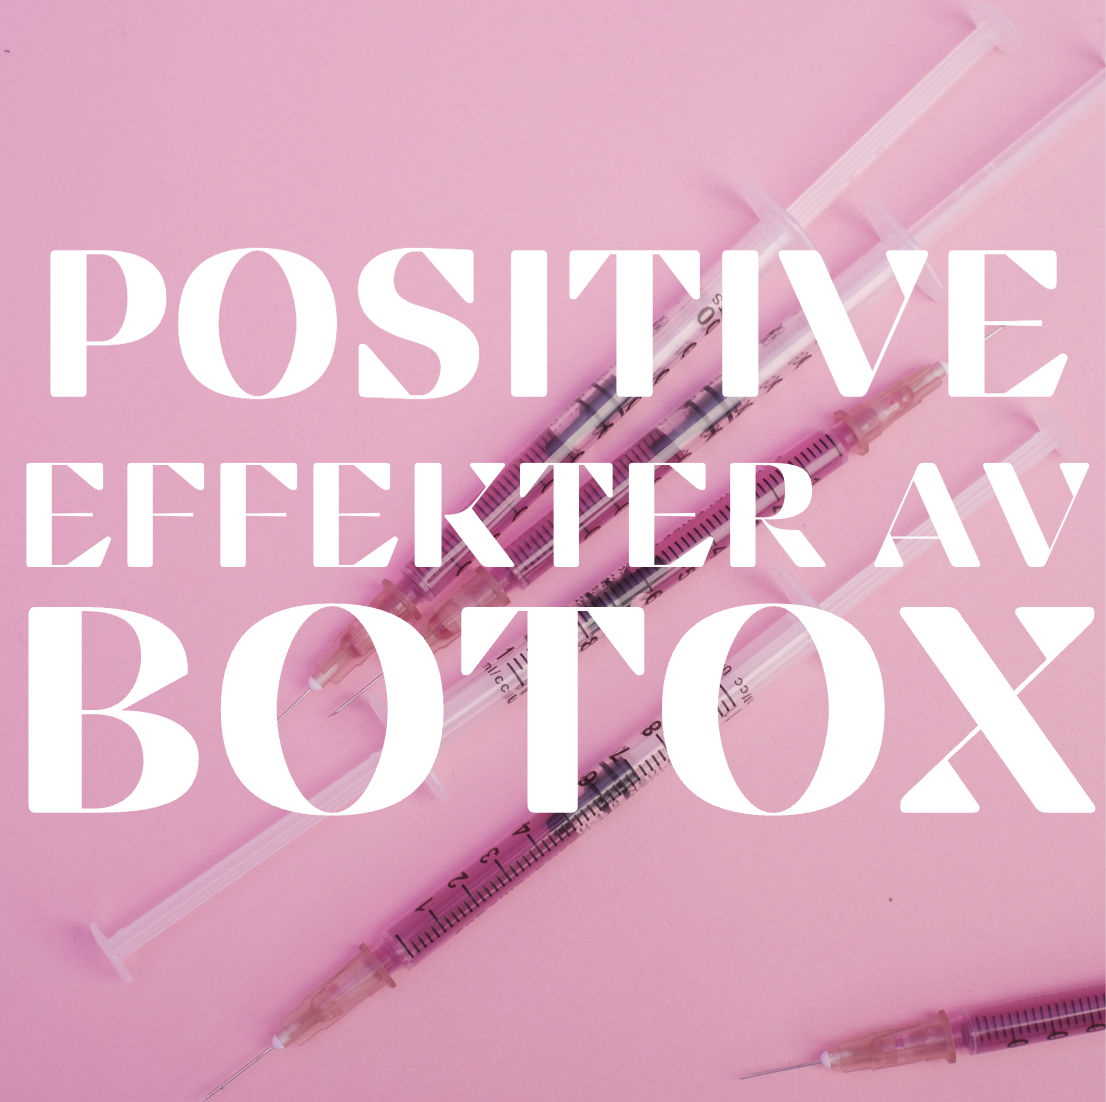 Oppdag de Positive Effektene av Botoxbehandling